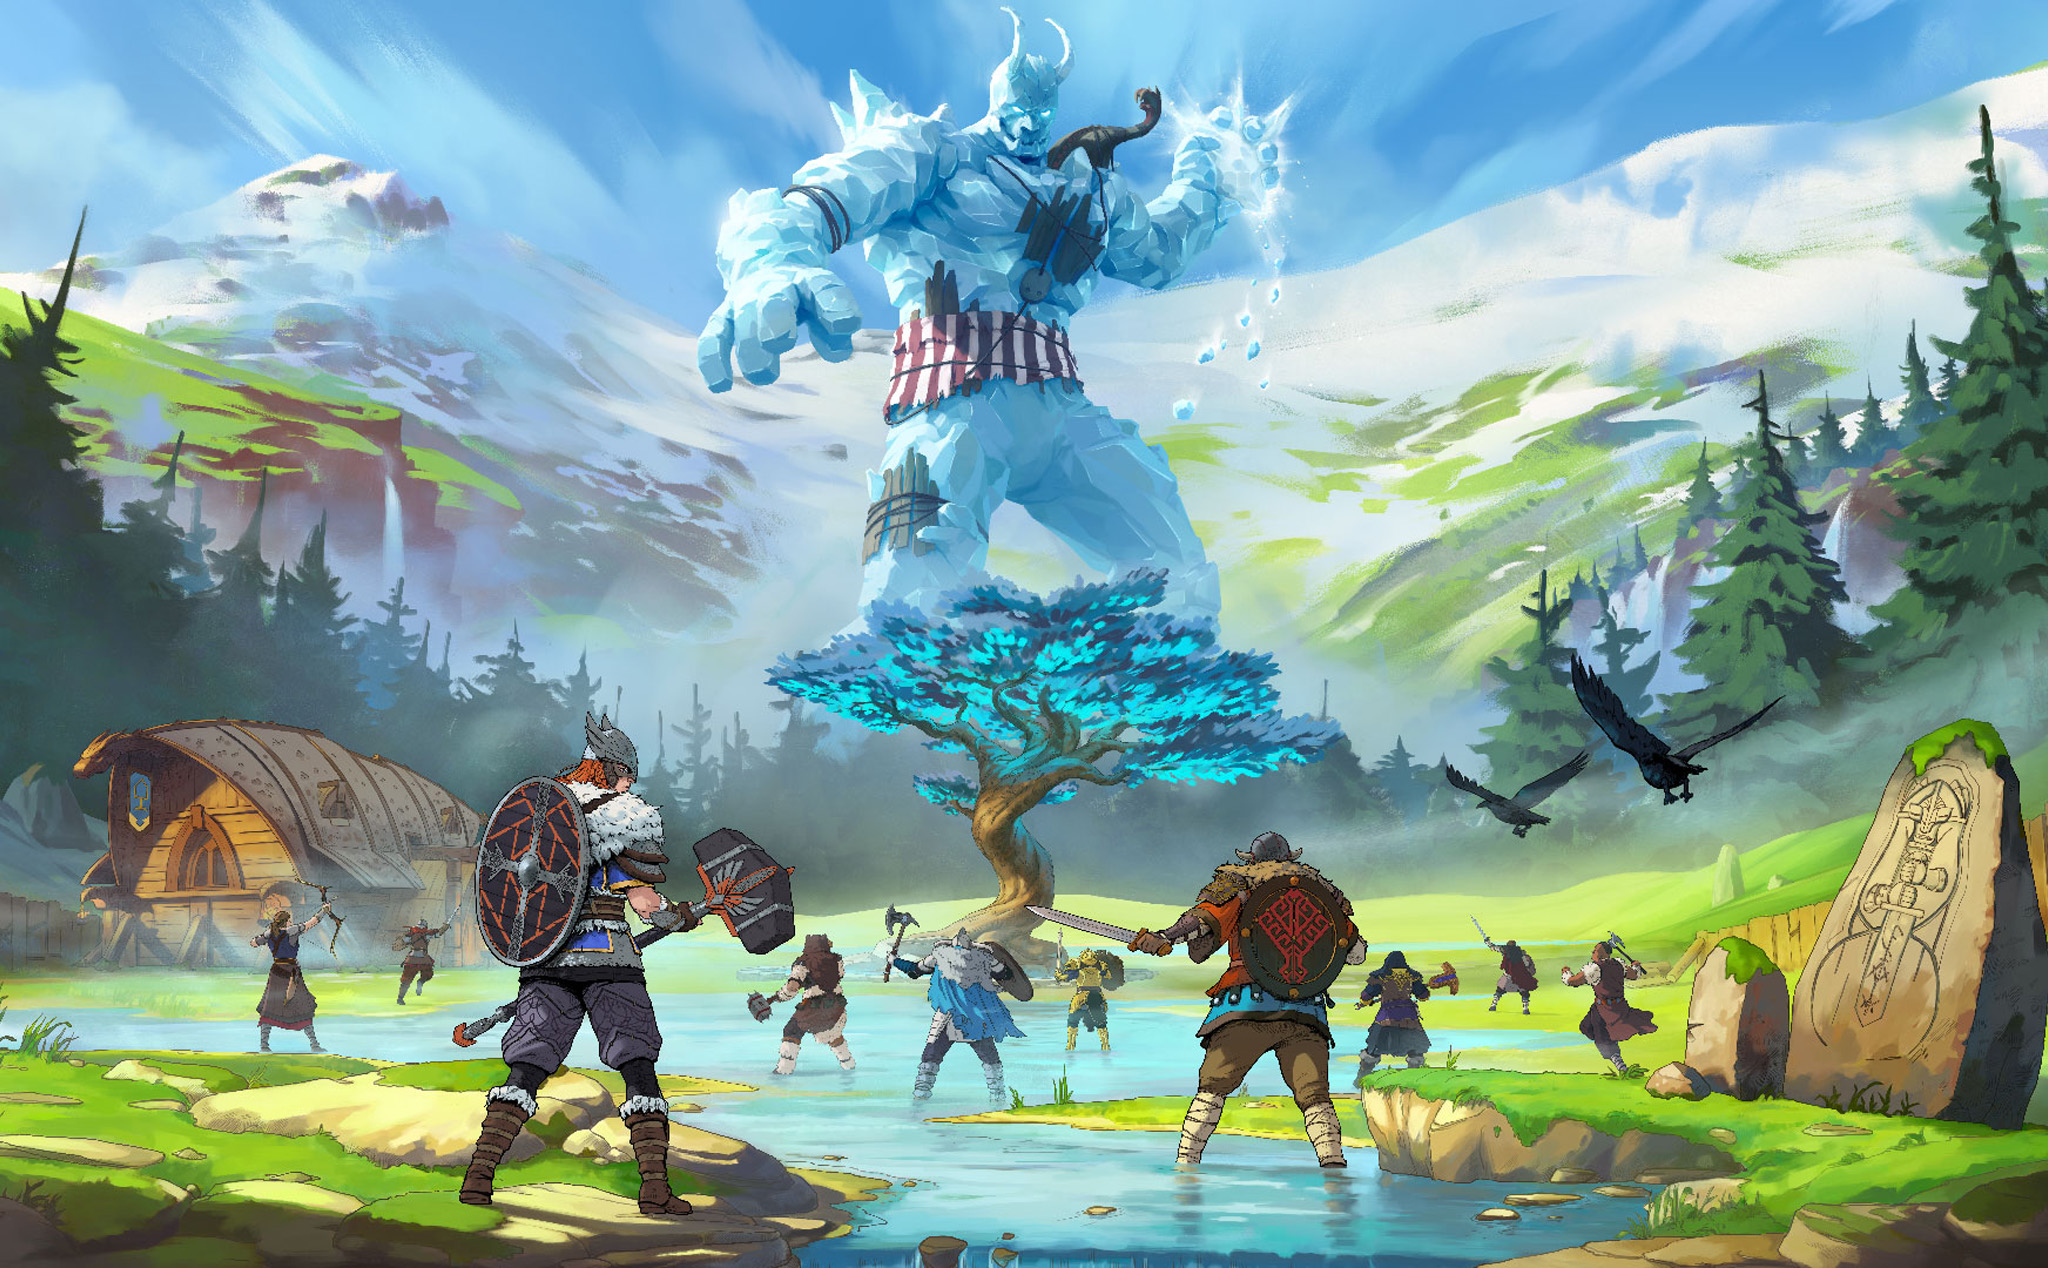 Chơi game gì mùa giãn cách: Tribes of Midgard, hiện tượng game sinh tồn mới, 10 người cùng chơi